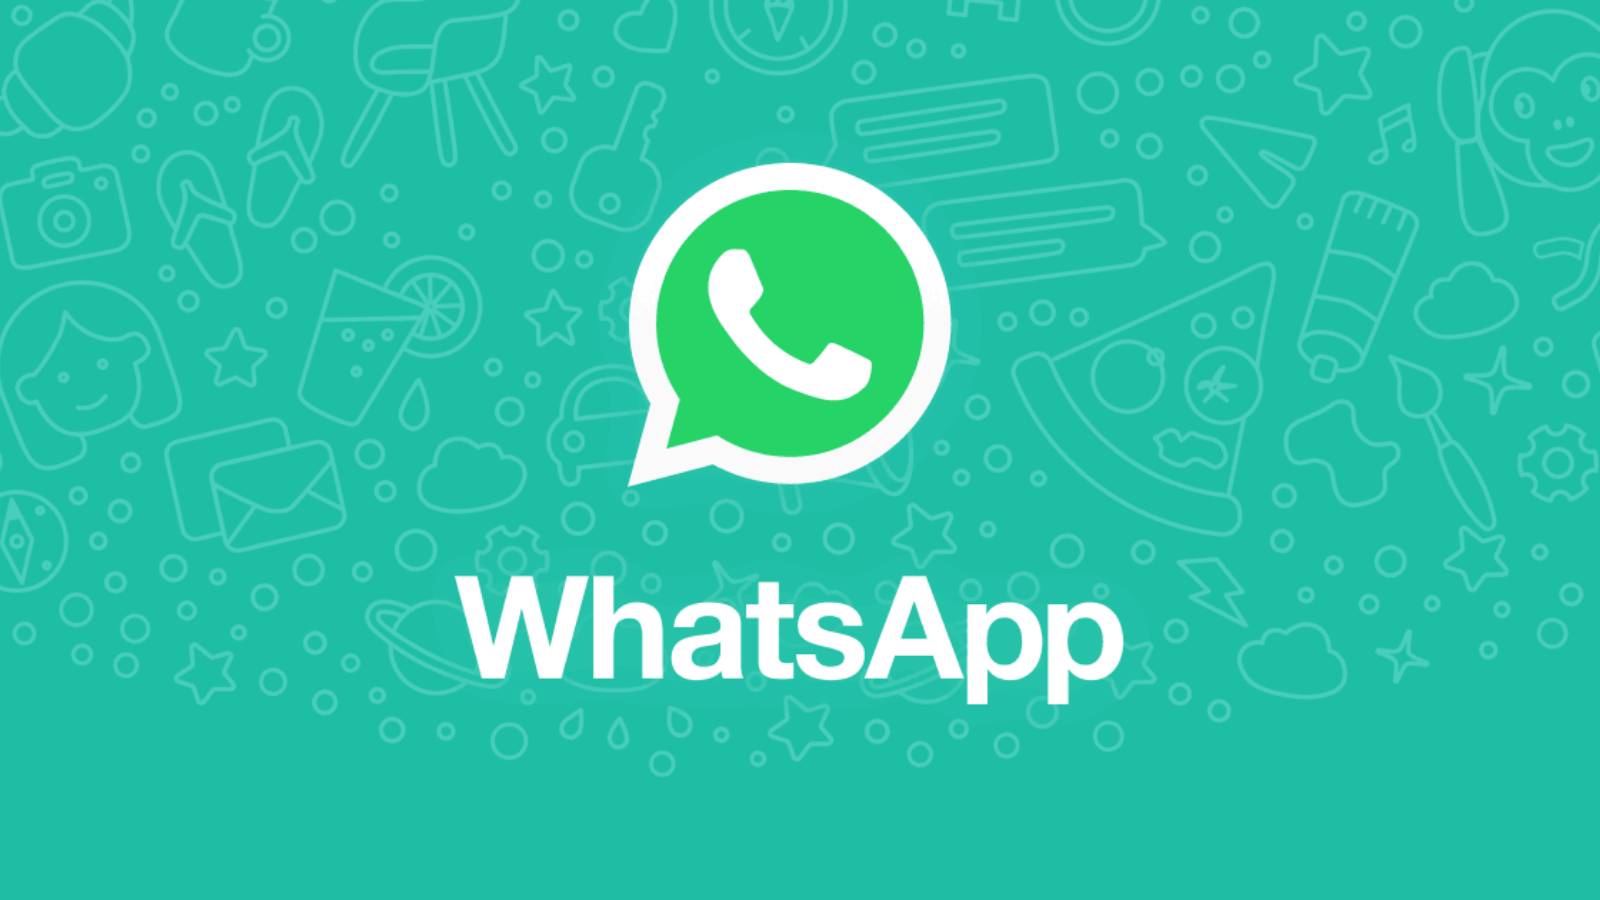 WhatsApp tekee VALTAISTA SALAISTA Android iPhone -muutosta